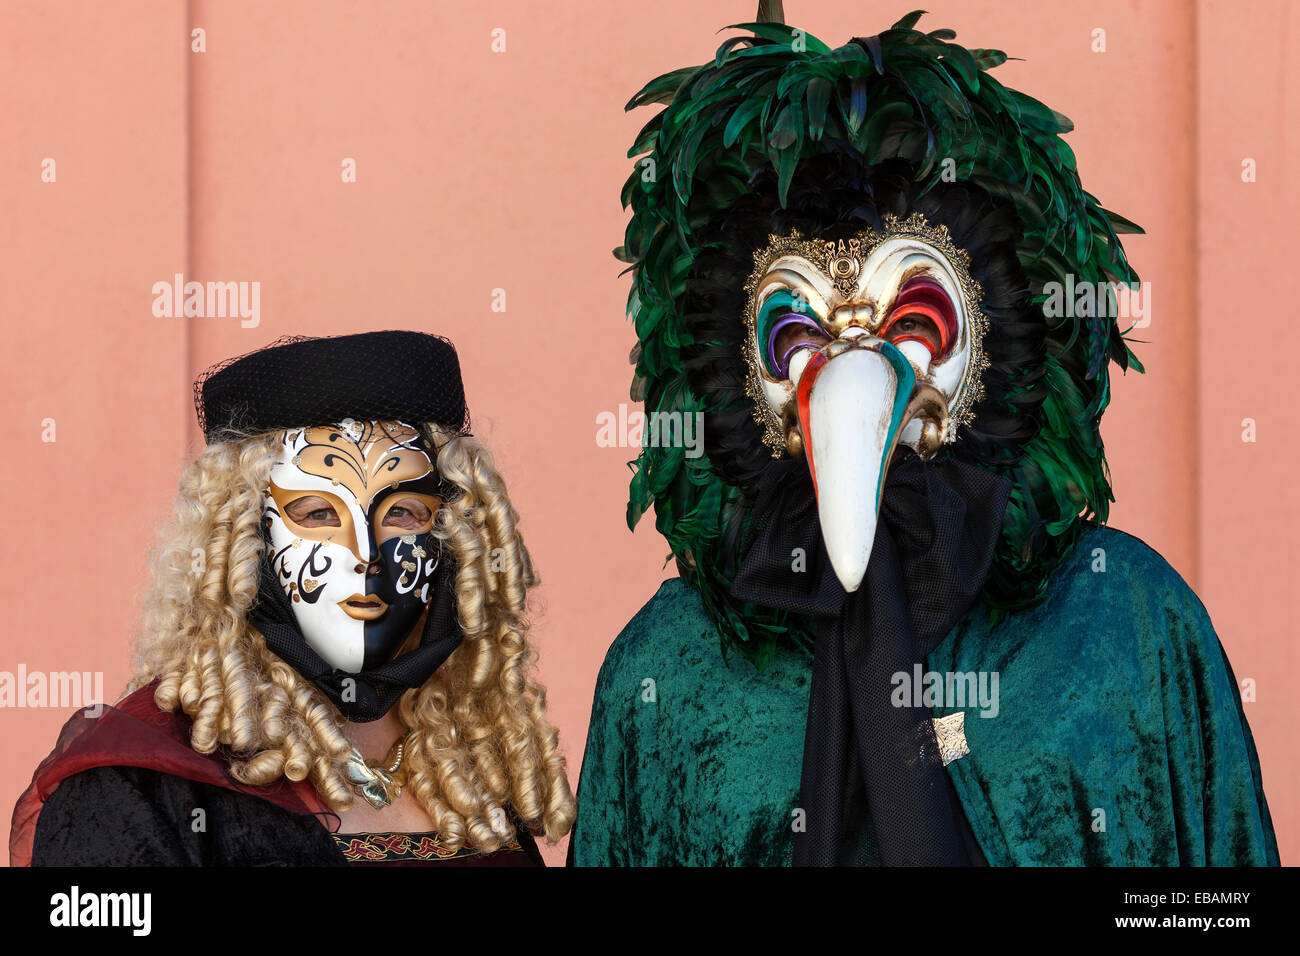 Carnevale veneziano di maschere e costumi di scena presso la Fiera veneziano, Ludwigsburg, Baden-Württemberg, Germania Foto Stock